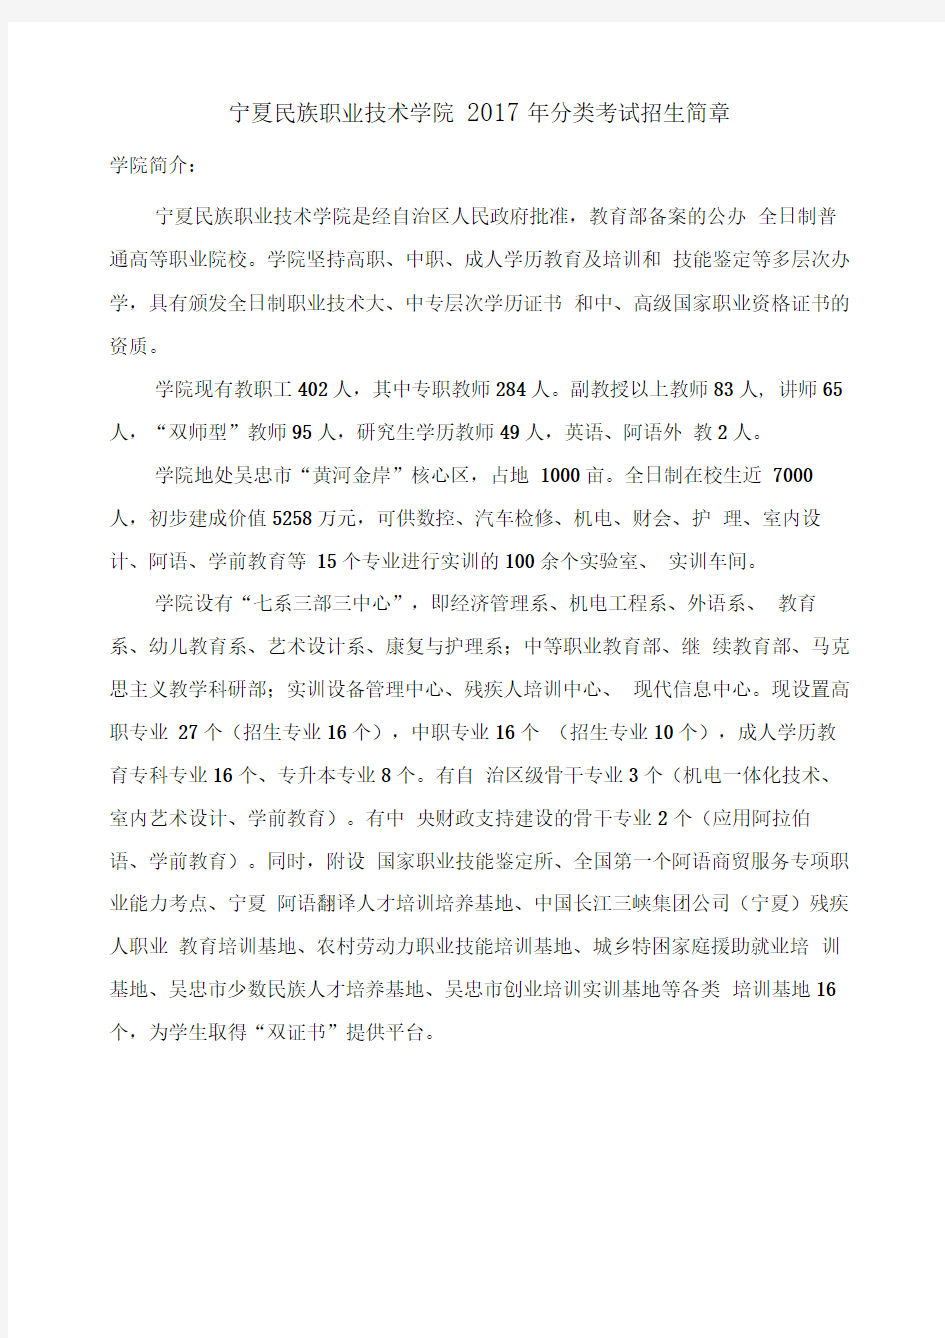 宁夏民族职业技术学院2017年分类考试招生简章